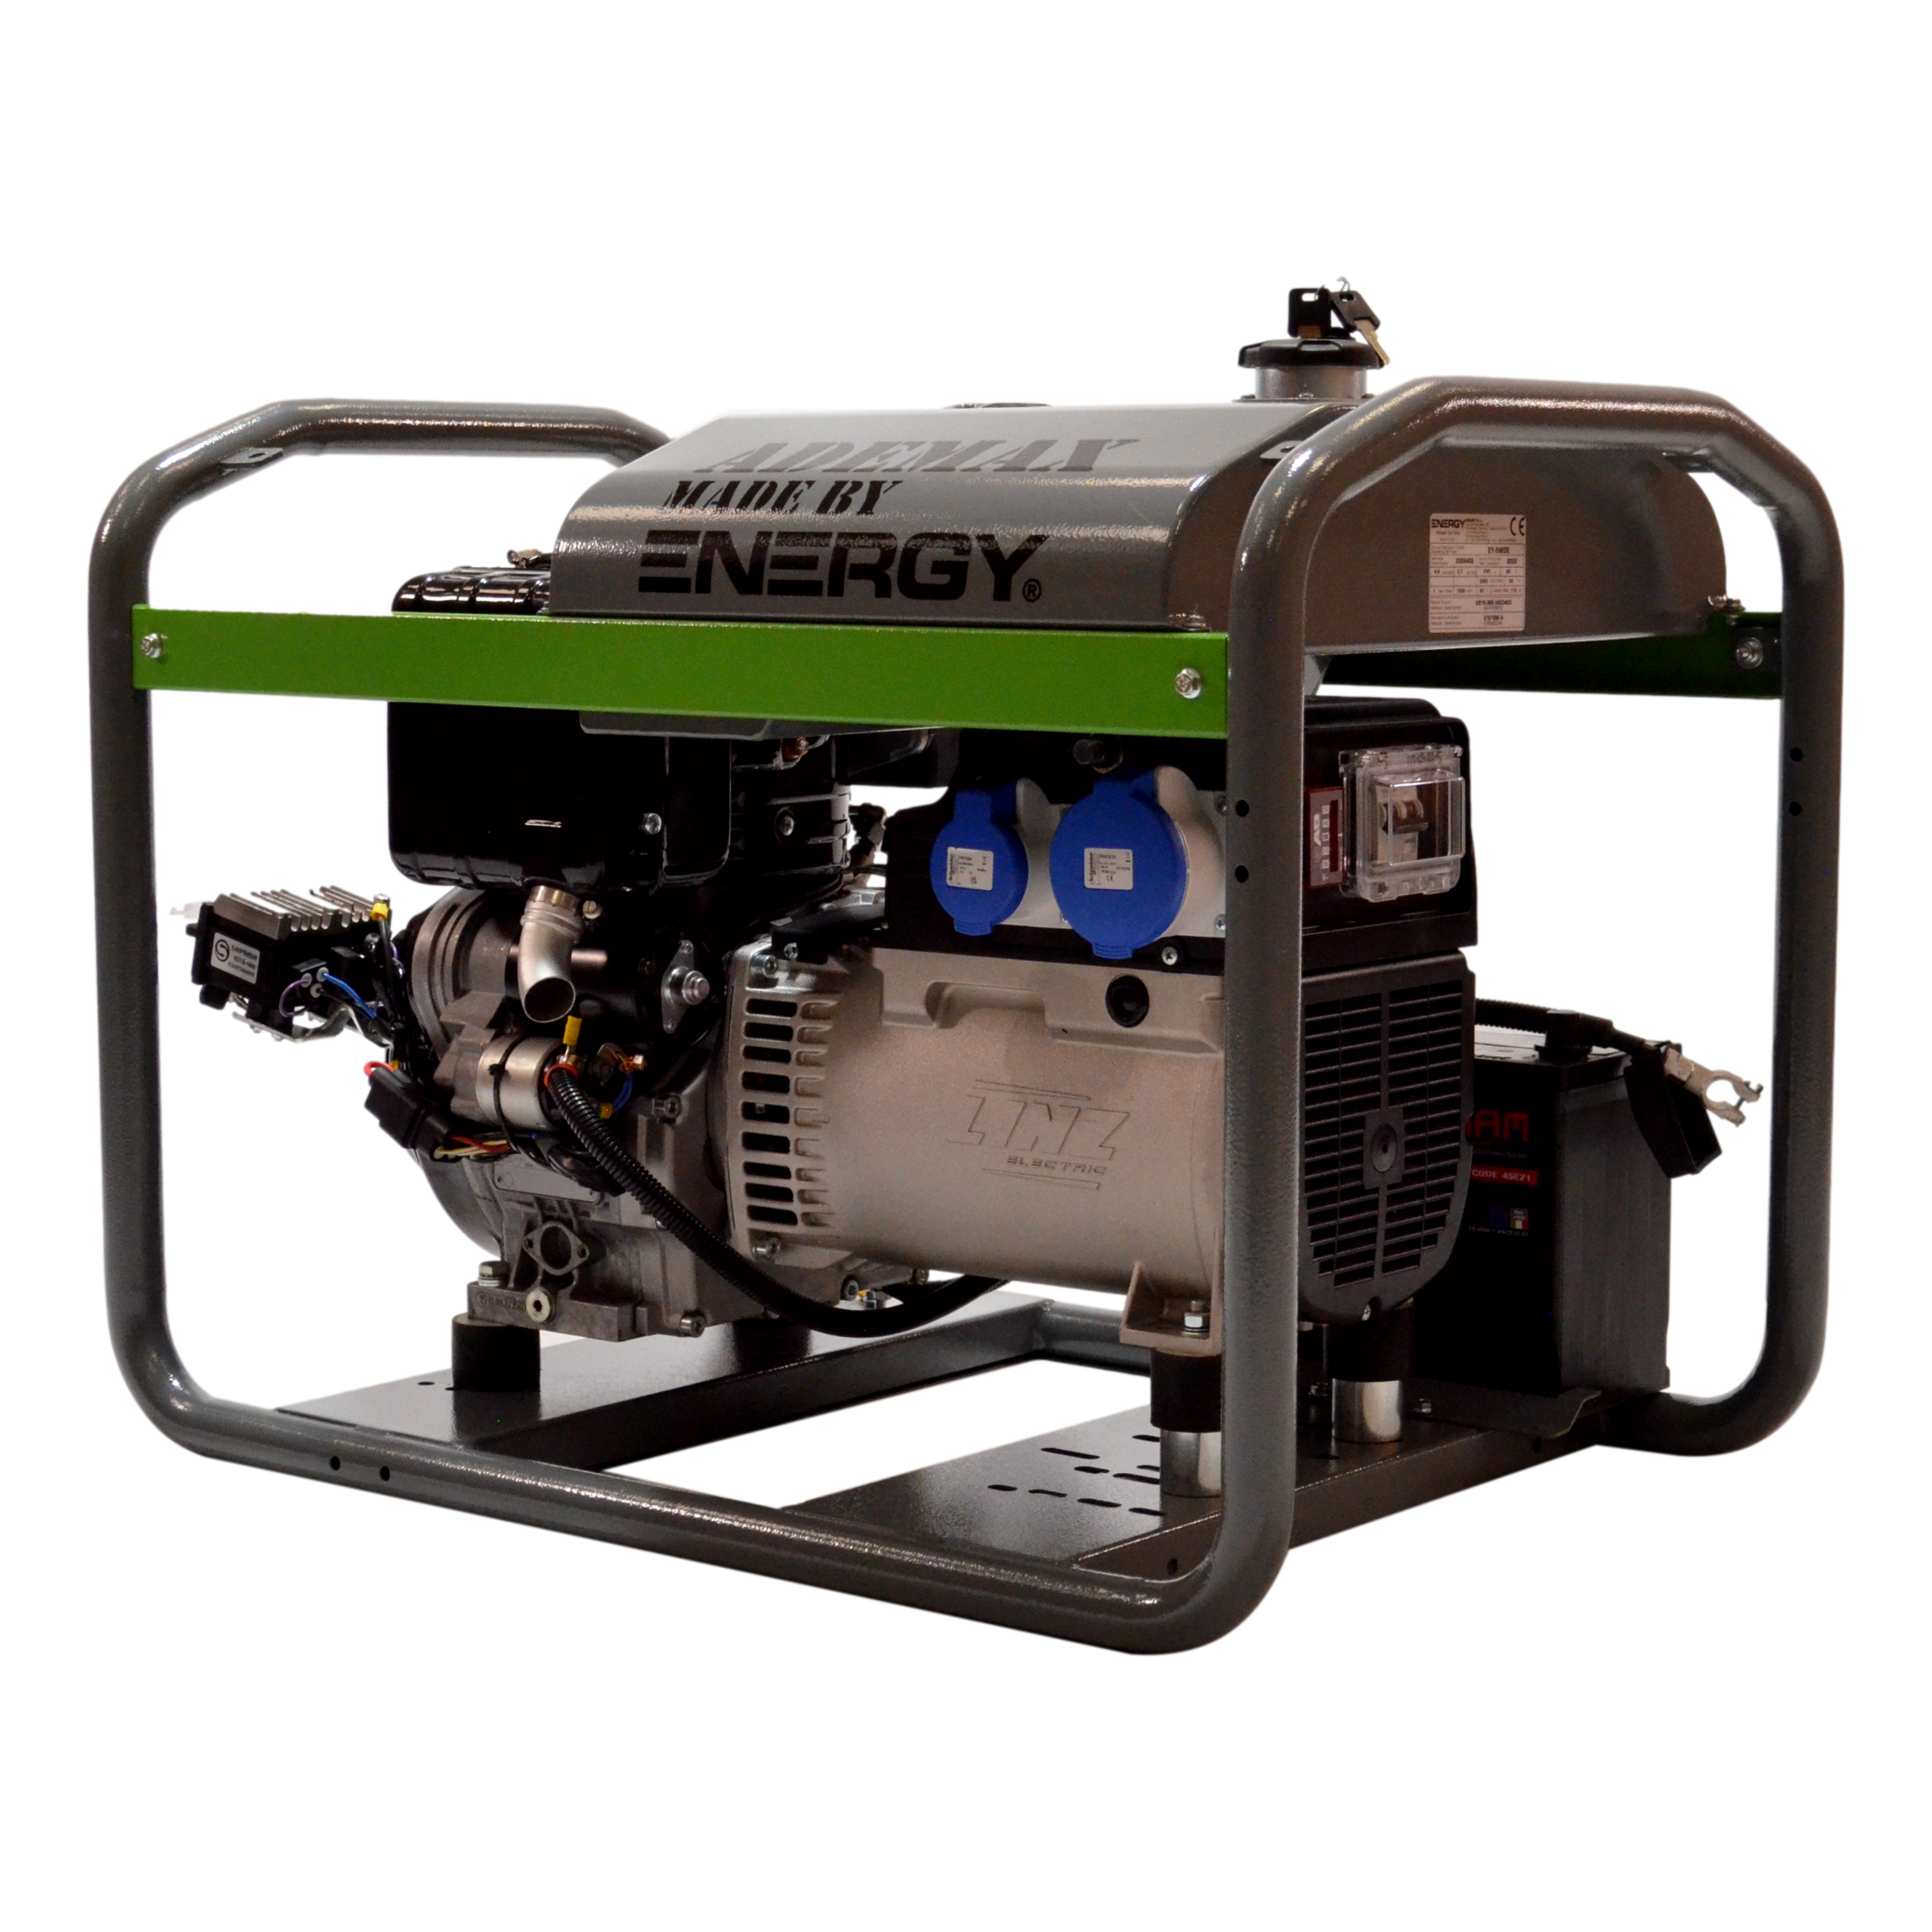 5 kvA Diesel 230V STROMAGGREGAT STROMERZEUGER ADEMAX MADE BY ENERGY 